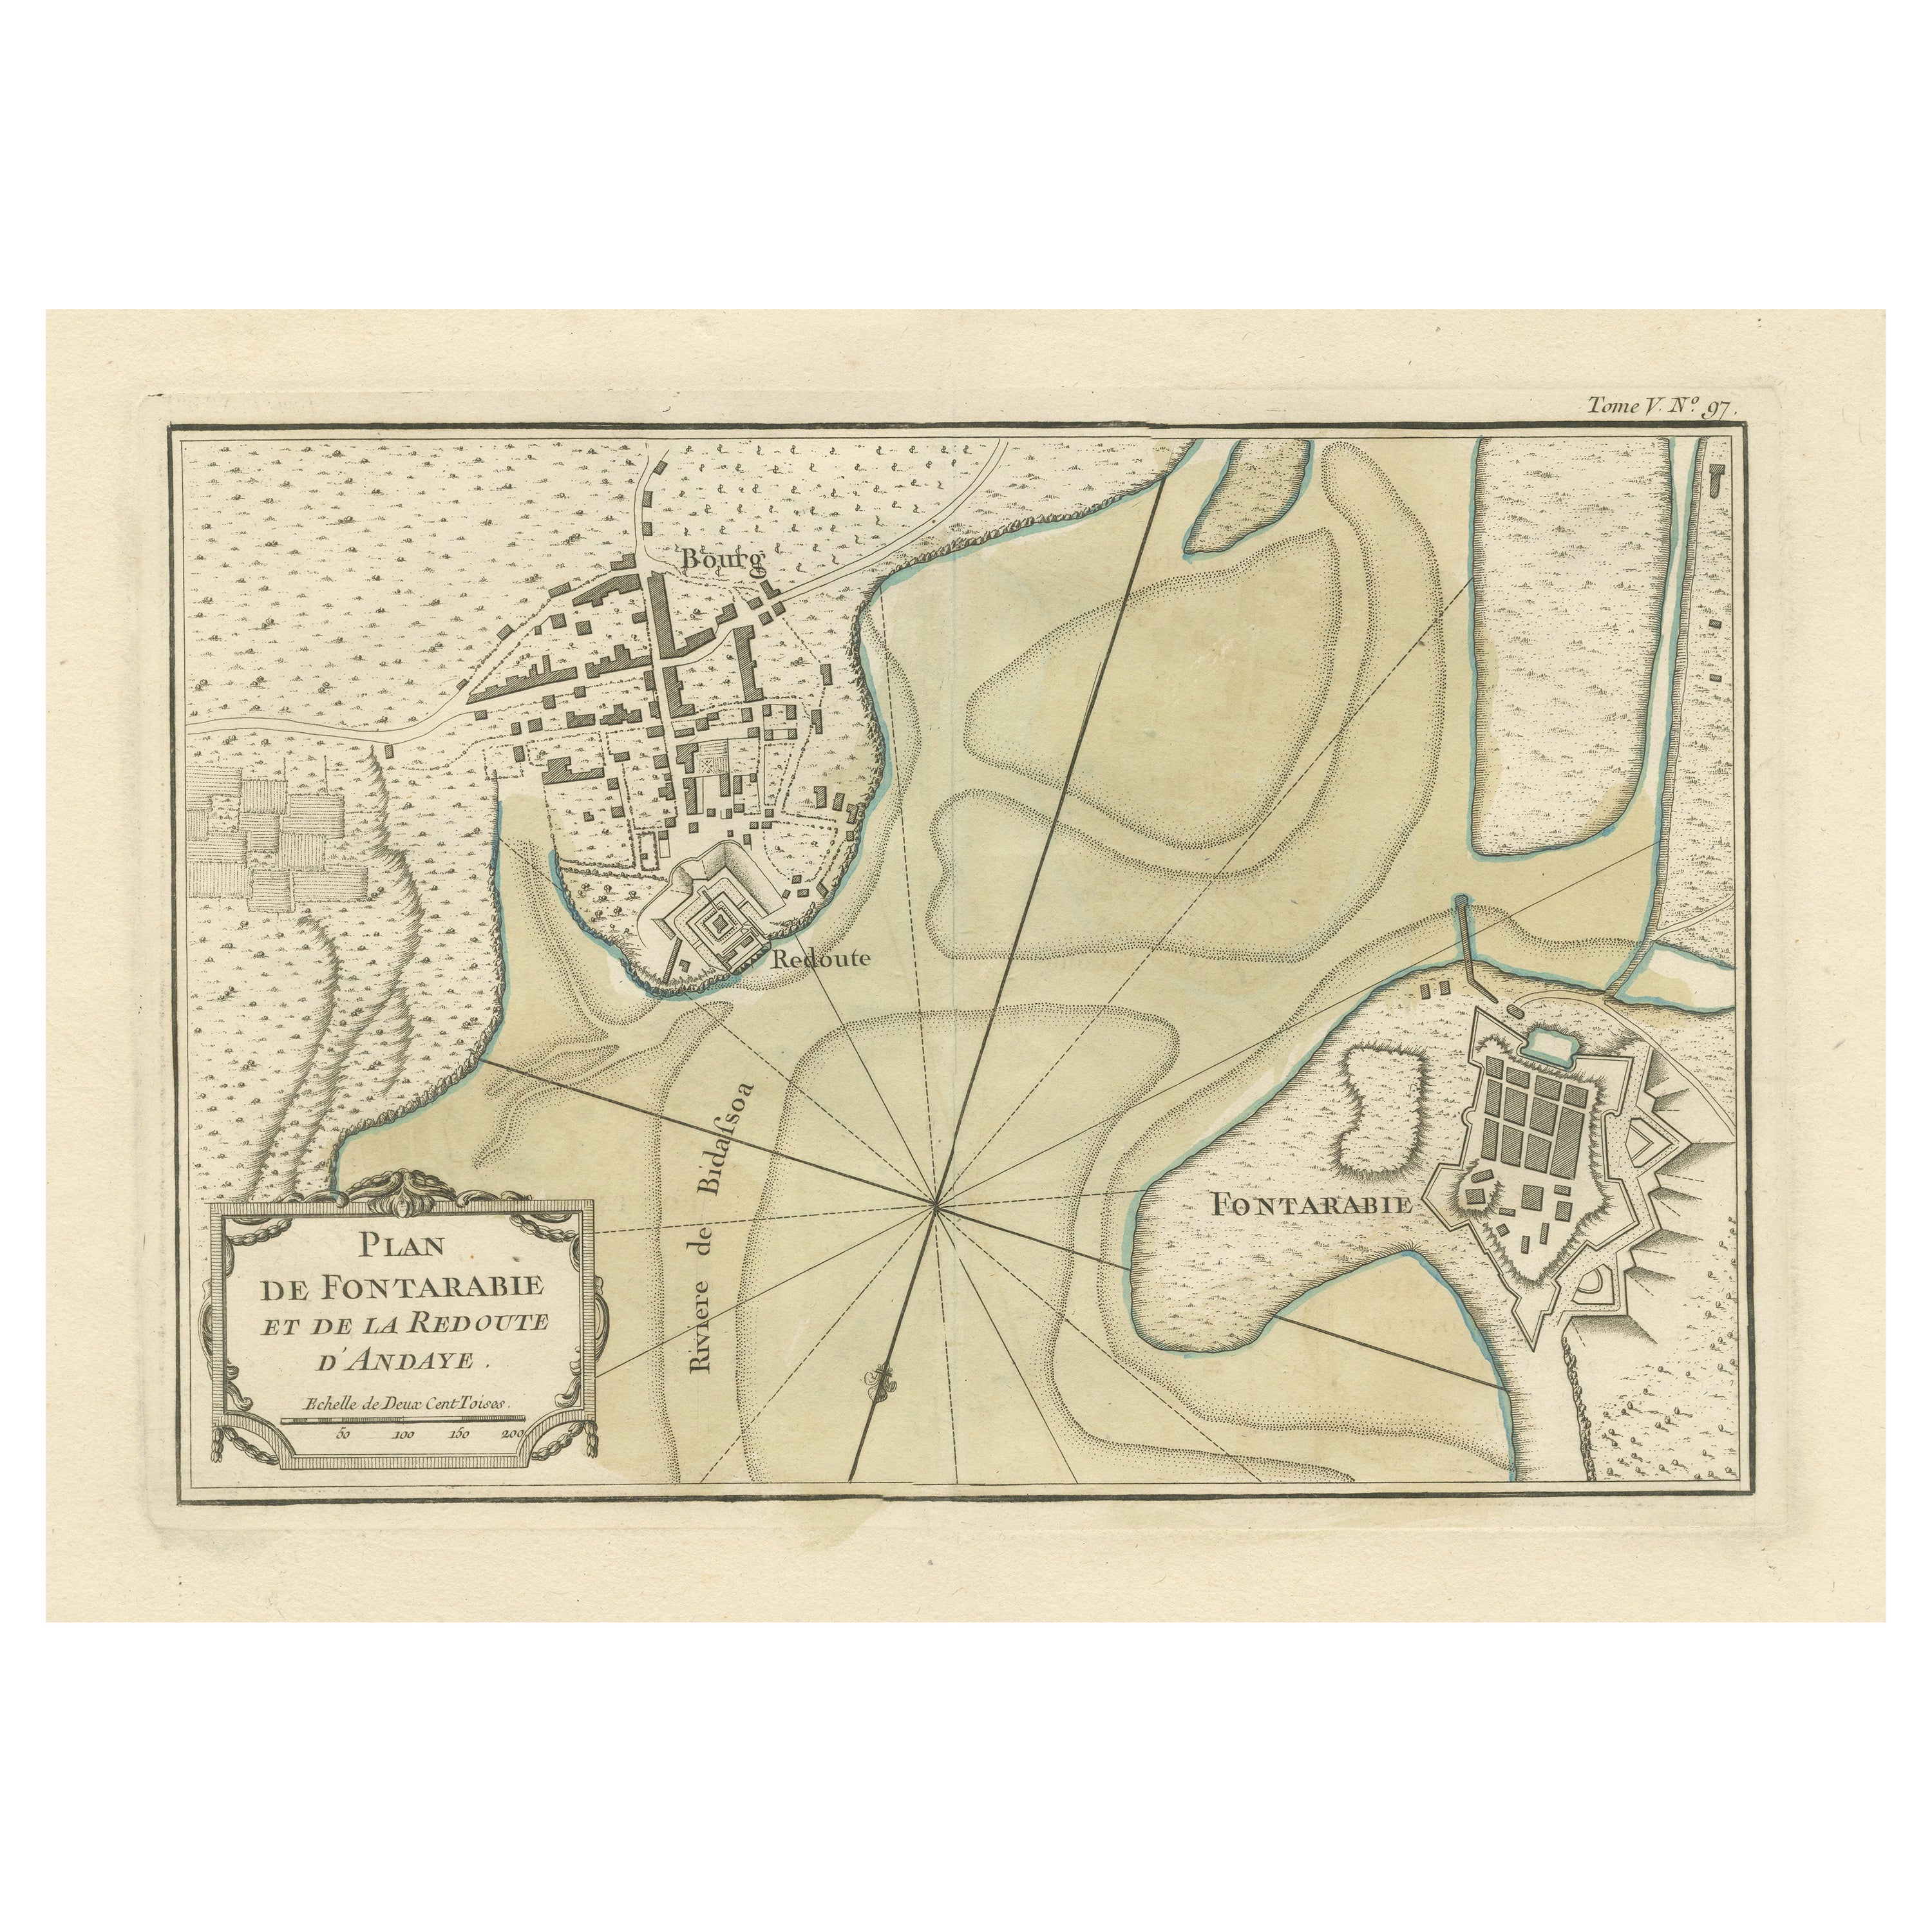 Carte ancienne de Hondarribia près de la rivière Bidasoa, France et Espagne en vente